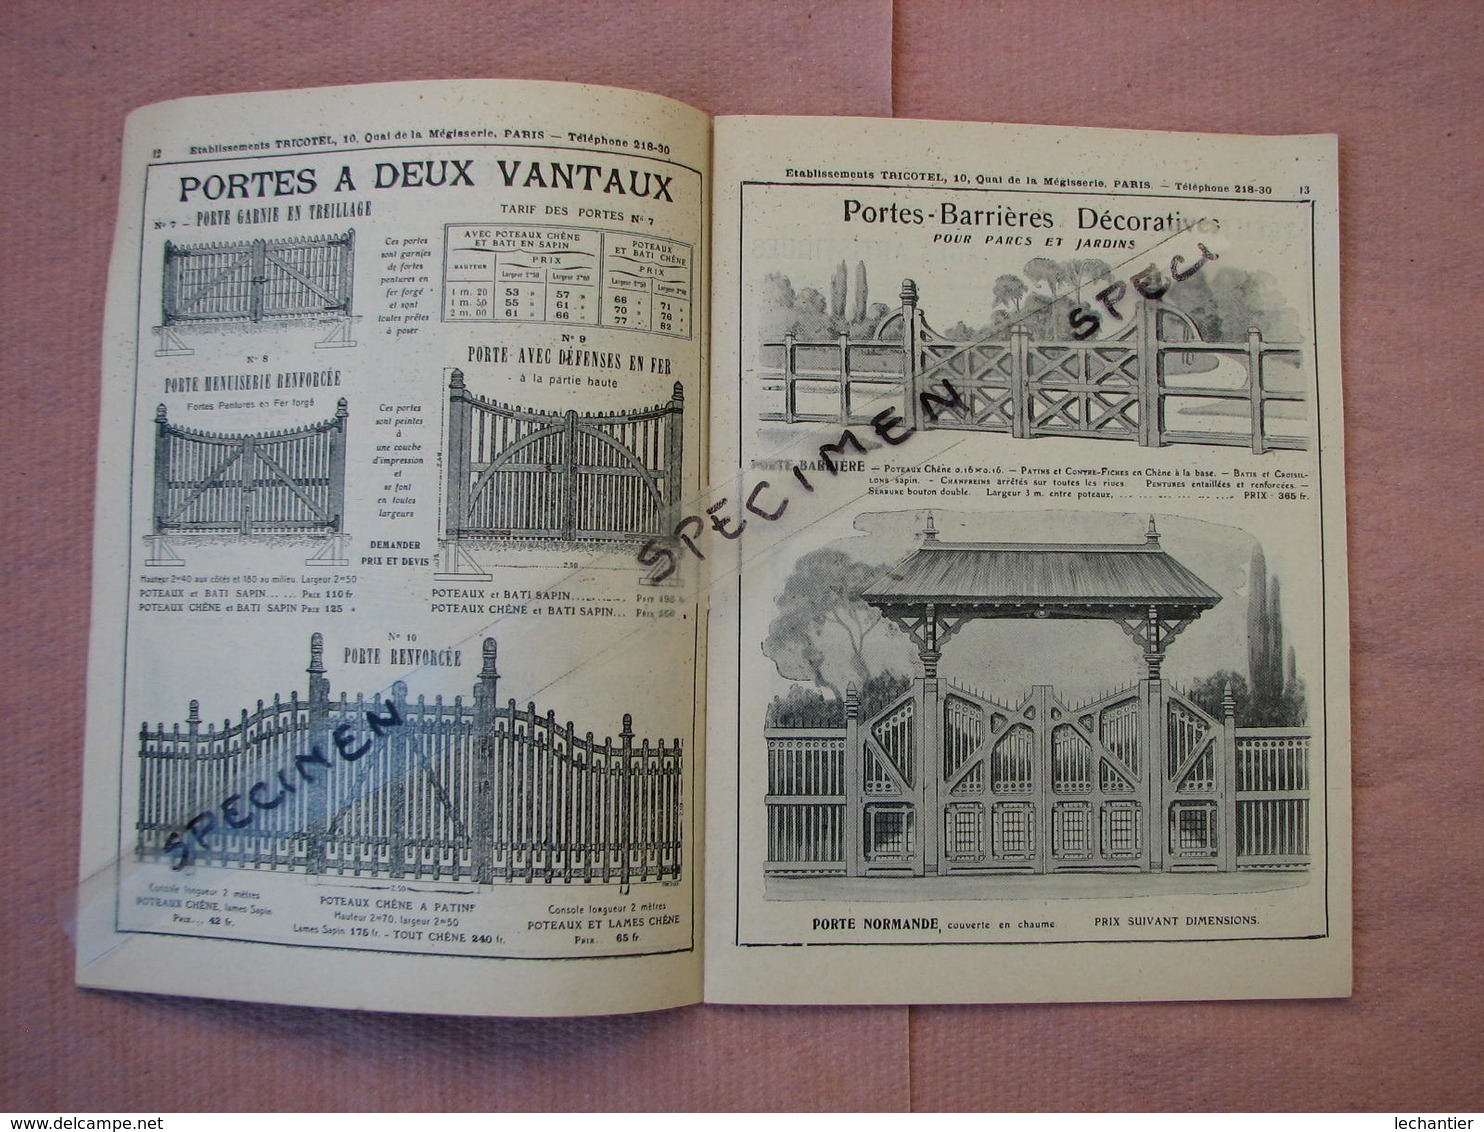 TRICOTEL Serrurerie, Clotures, Portails, Chenils, Poulaillers, Serres 44 Pages 13X18 - 1900 – 1949